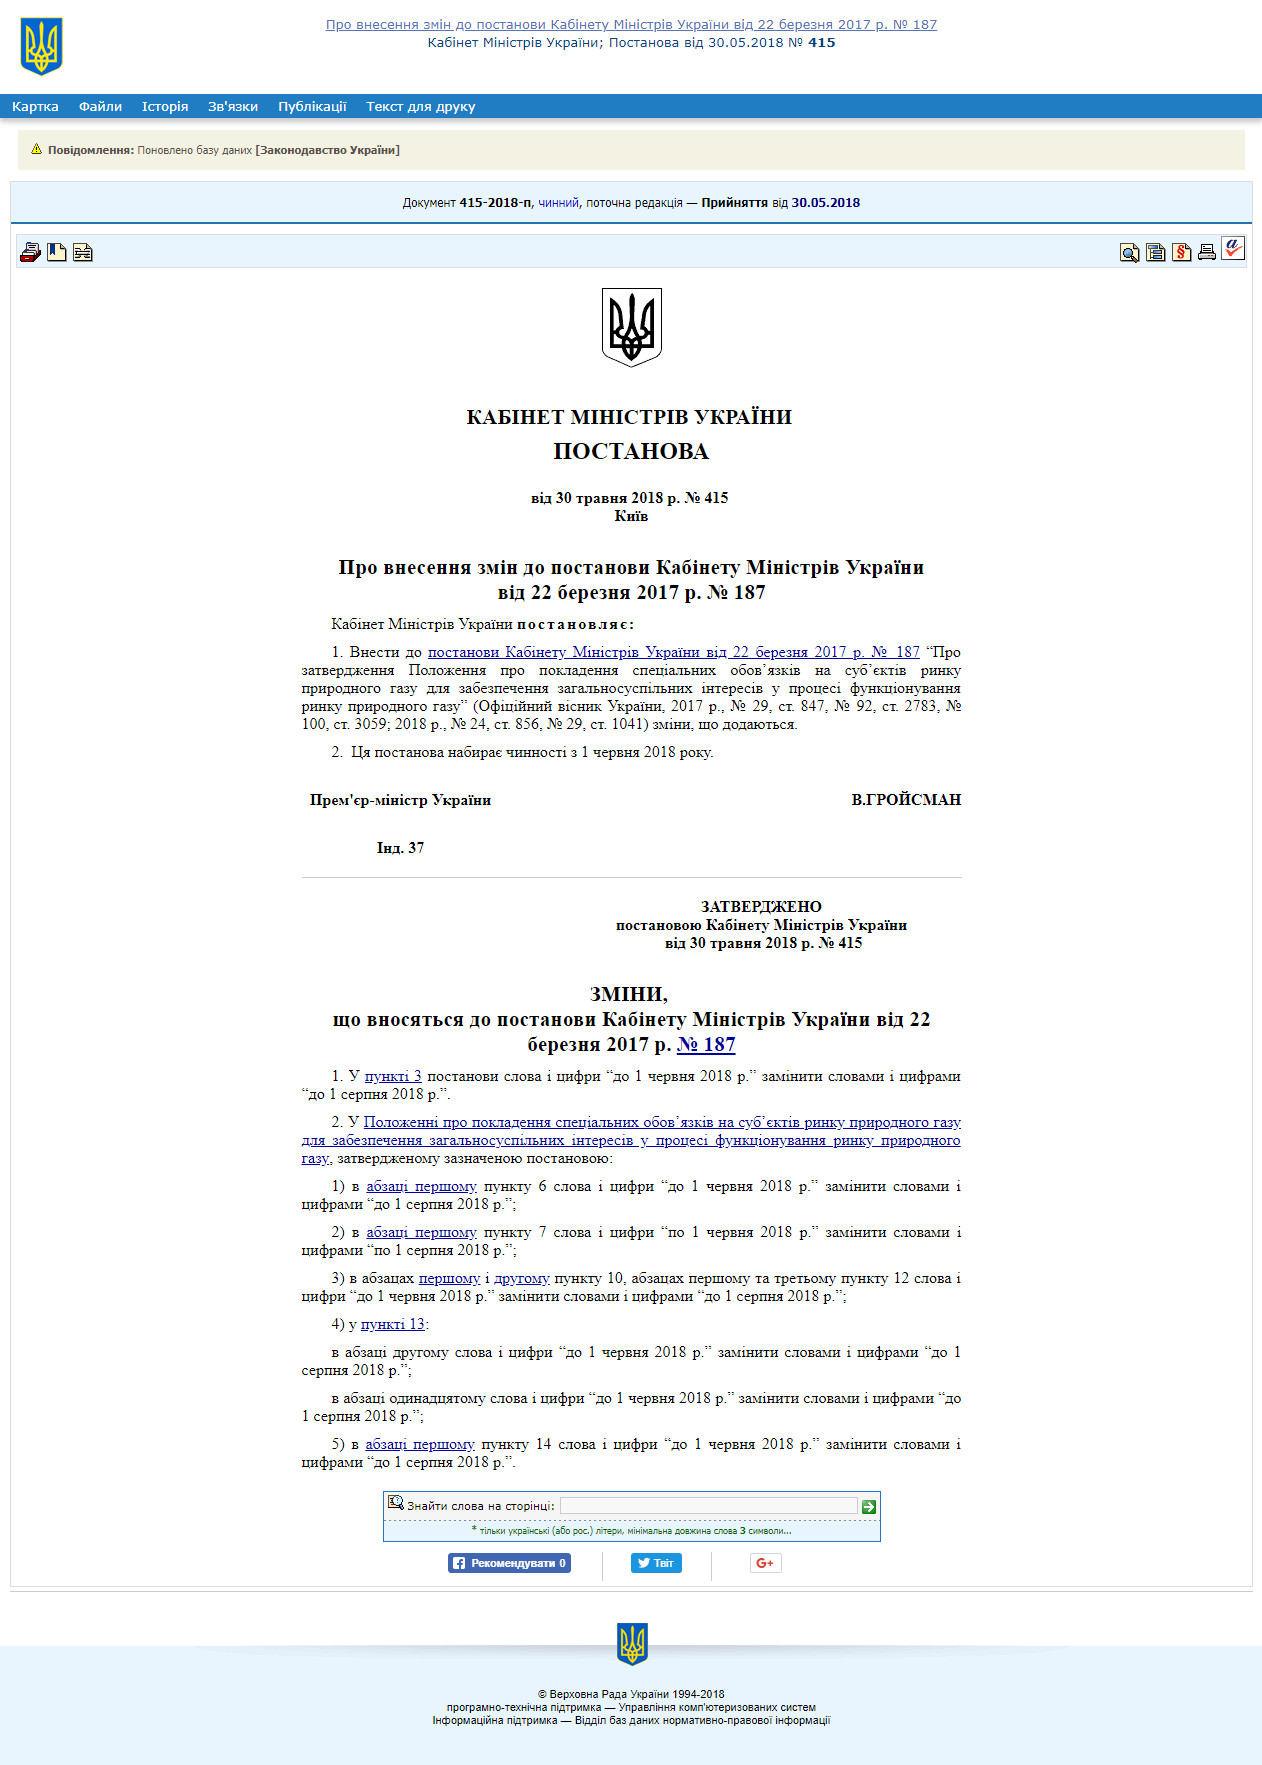 http://zakon2.rada.gov.ua/laws/show/415-2018-%D0%BF